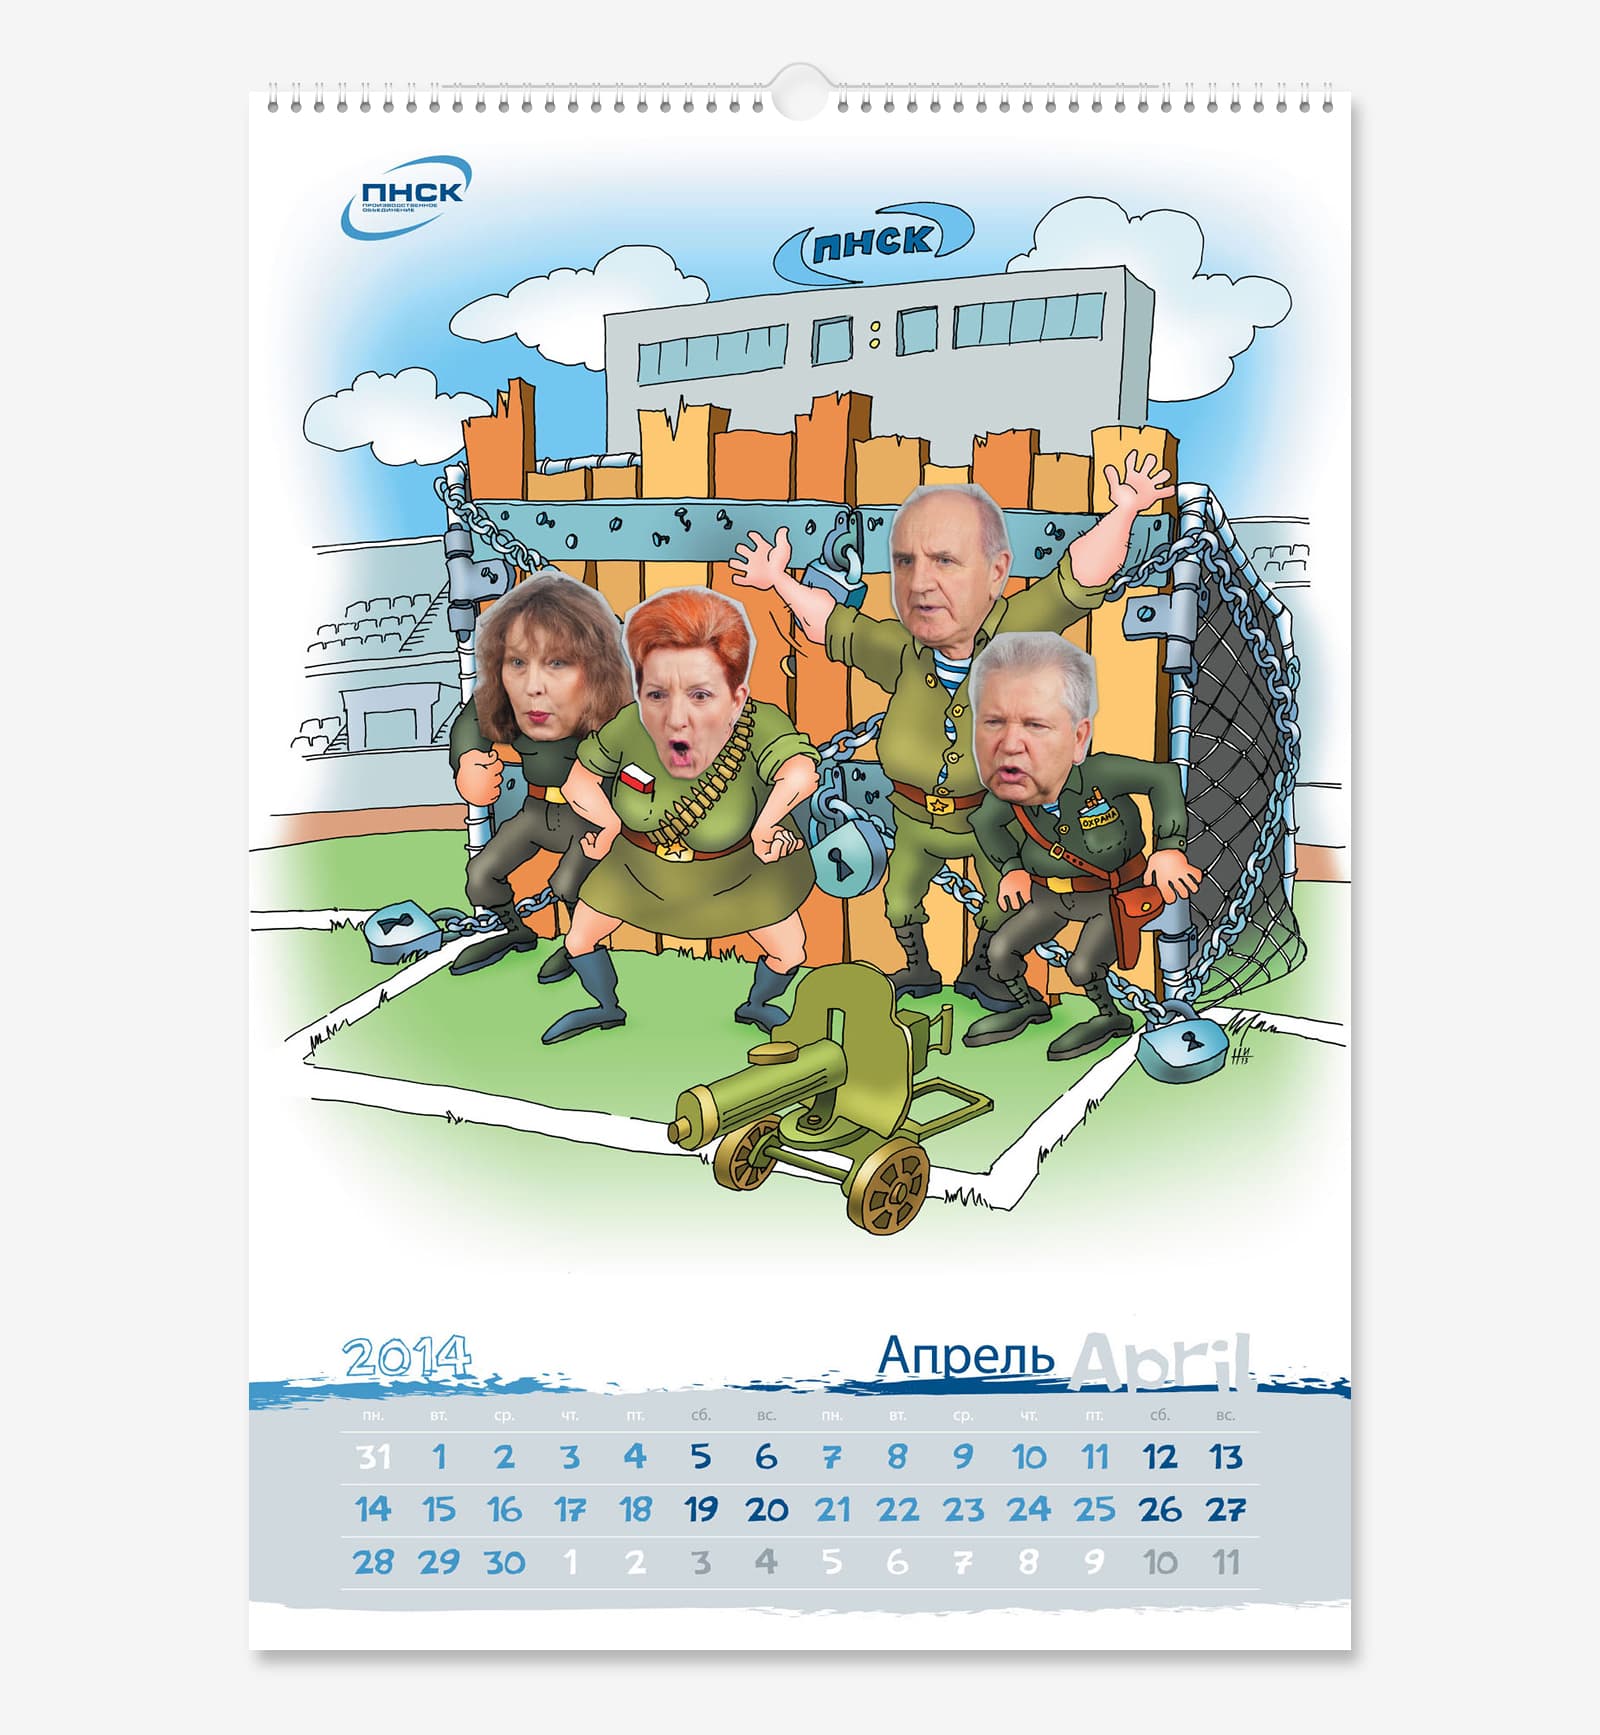 Нарисовали корпоративный календарь А3 для производственного объединения «ПНСК» на 2014 год